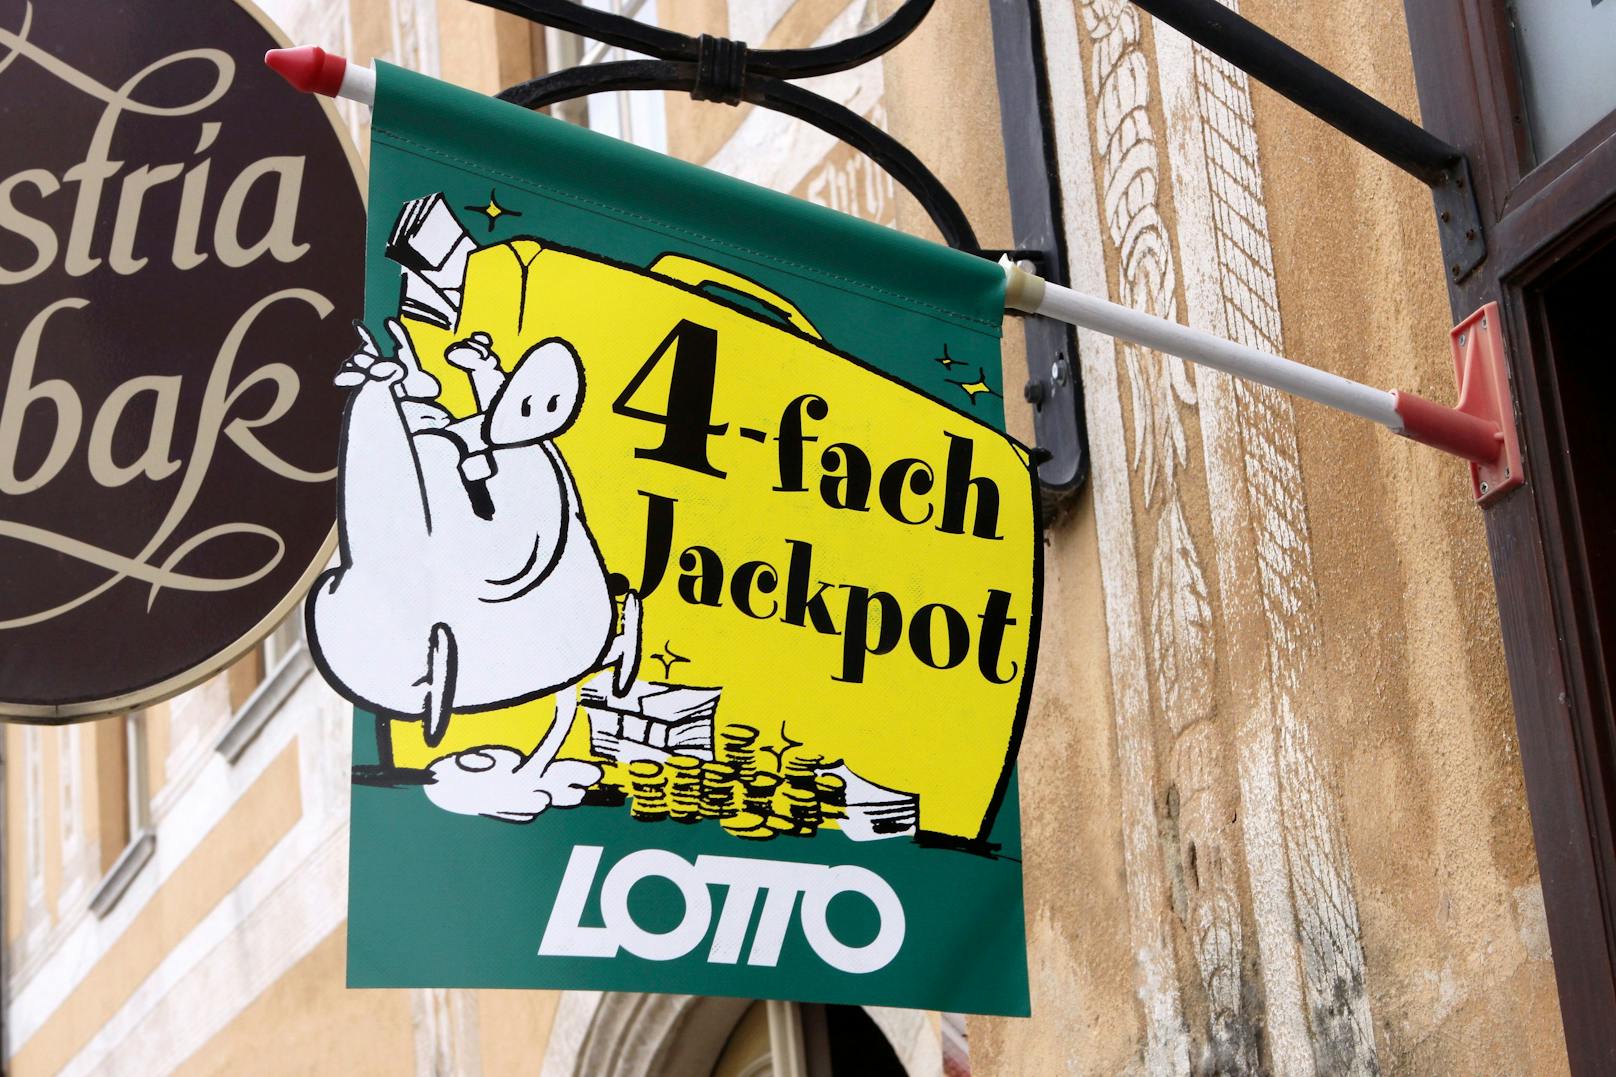 Bei der nächsten "Lotto 6 aus 45"-Ziehung am 17. Februar 2021 geht es wieder um einen 4-fach Jackpot.